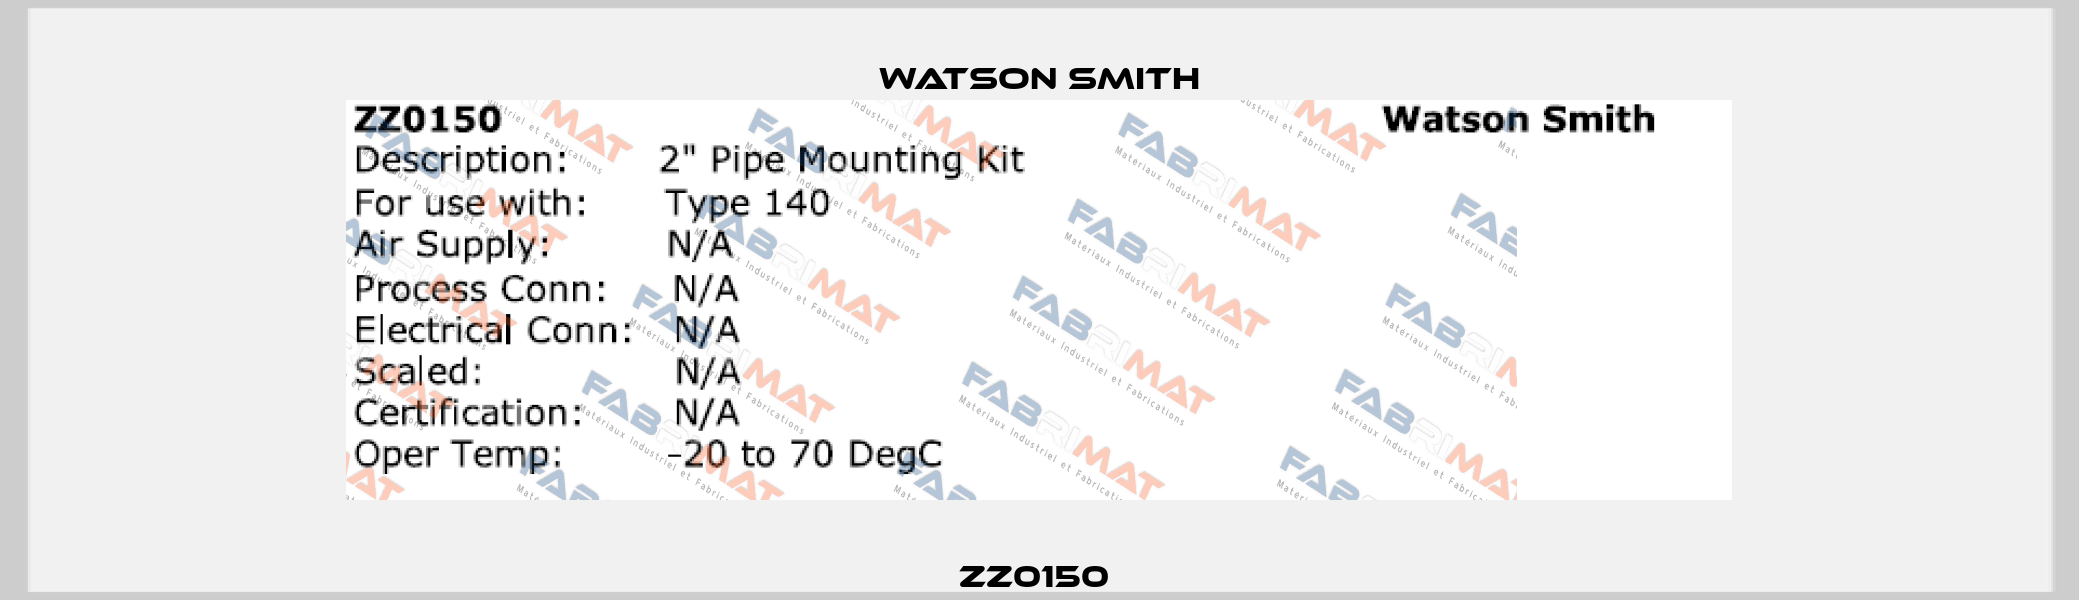 ZZ0150  Watson Smith